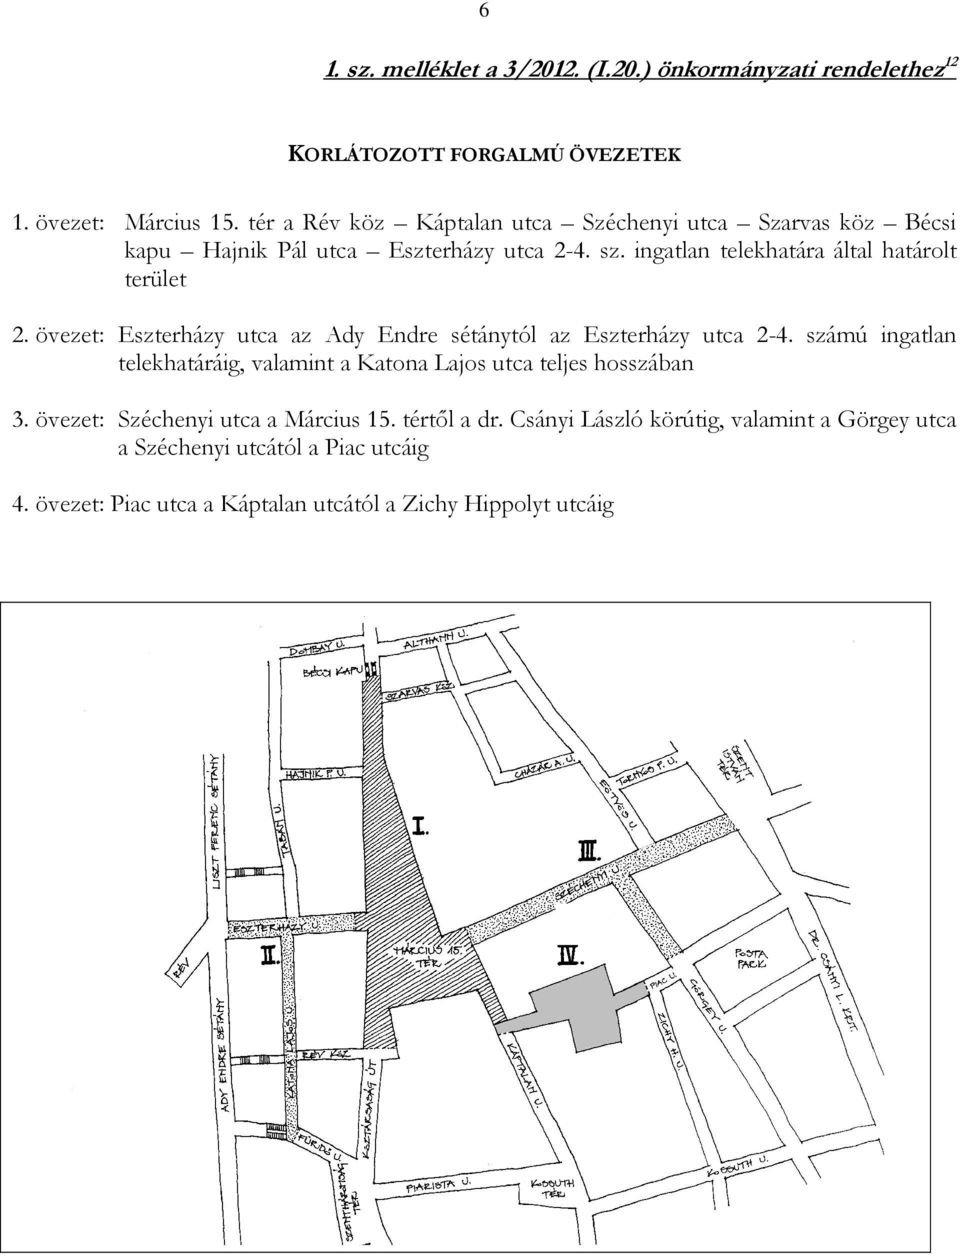 övezet: Eszterházy utca az Ady Endre sétánytól az Eszterházy utca 2-4. számú ingatlan telekhatáráig, valamint a Katona Lajos utca teljes hosszában 3.